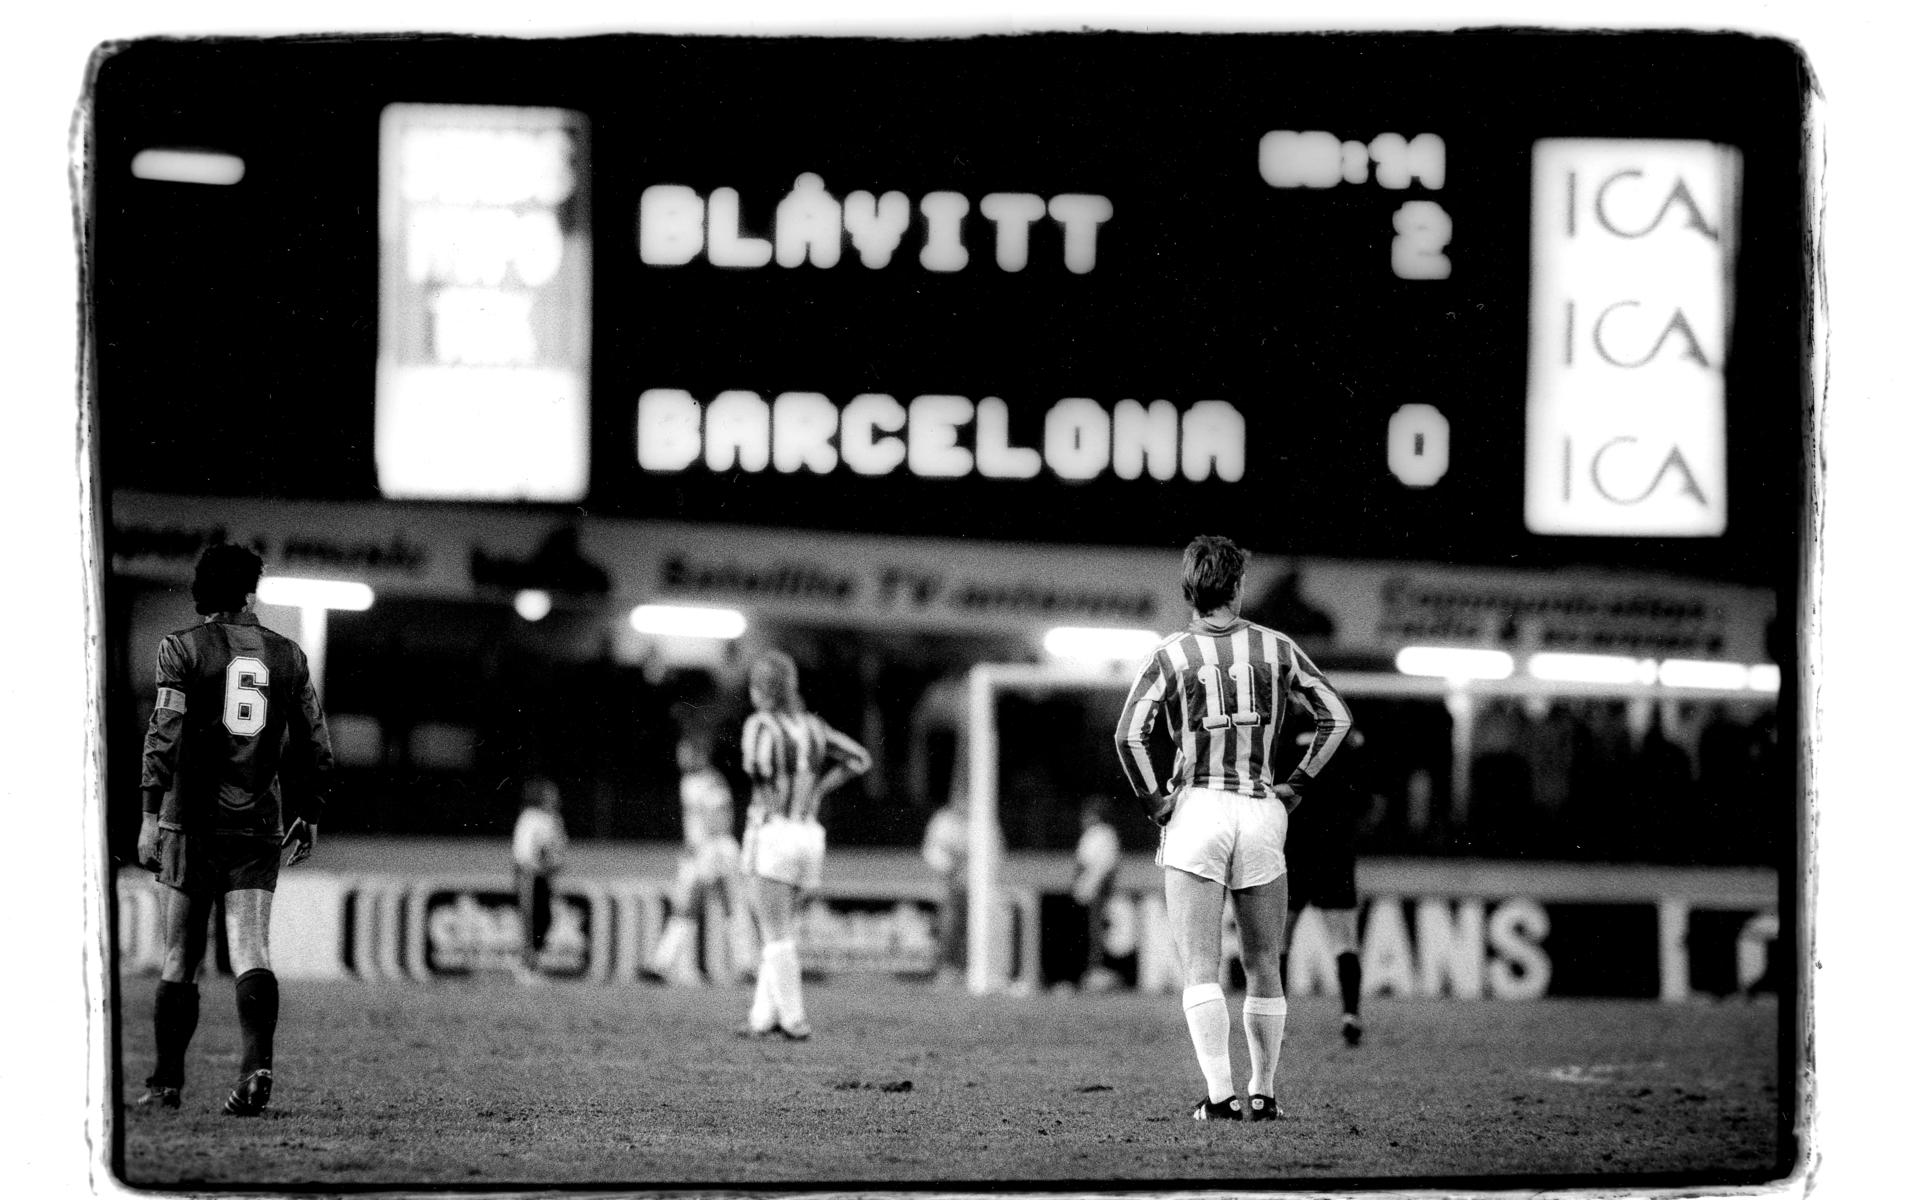 IFK Göteborg besegrade Barcelona i den fösta semifinalen i Europacupen 1986. Resultatet blev 3-0 - en magisk vårkväll på Nya Ullevi. Sedan vände Barca i returen och gick till final.